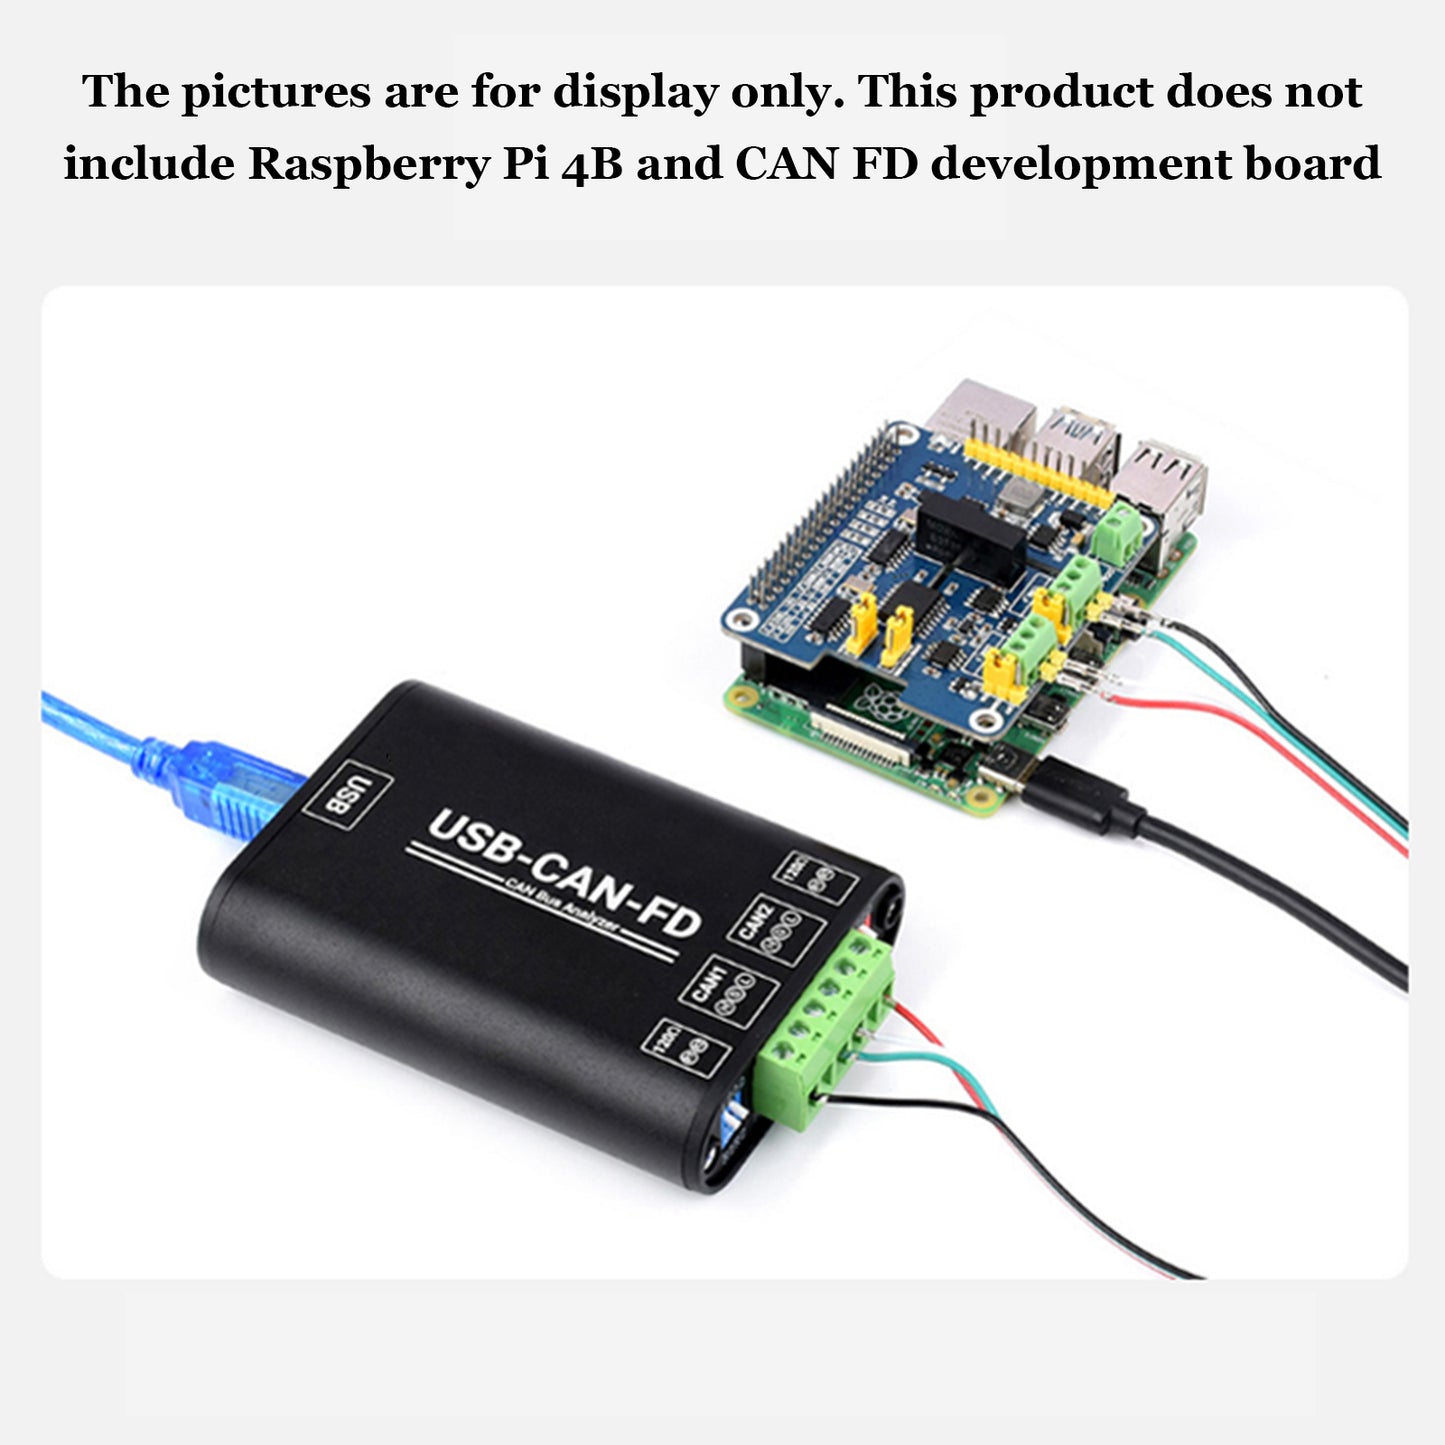 USB-zu-CAN-FD-Schnittstellenkonverter, Kommunikationsmodul mit elektrischer Isolierung